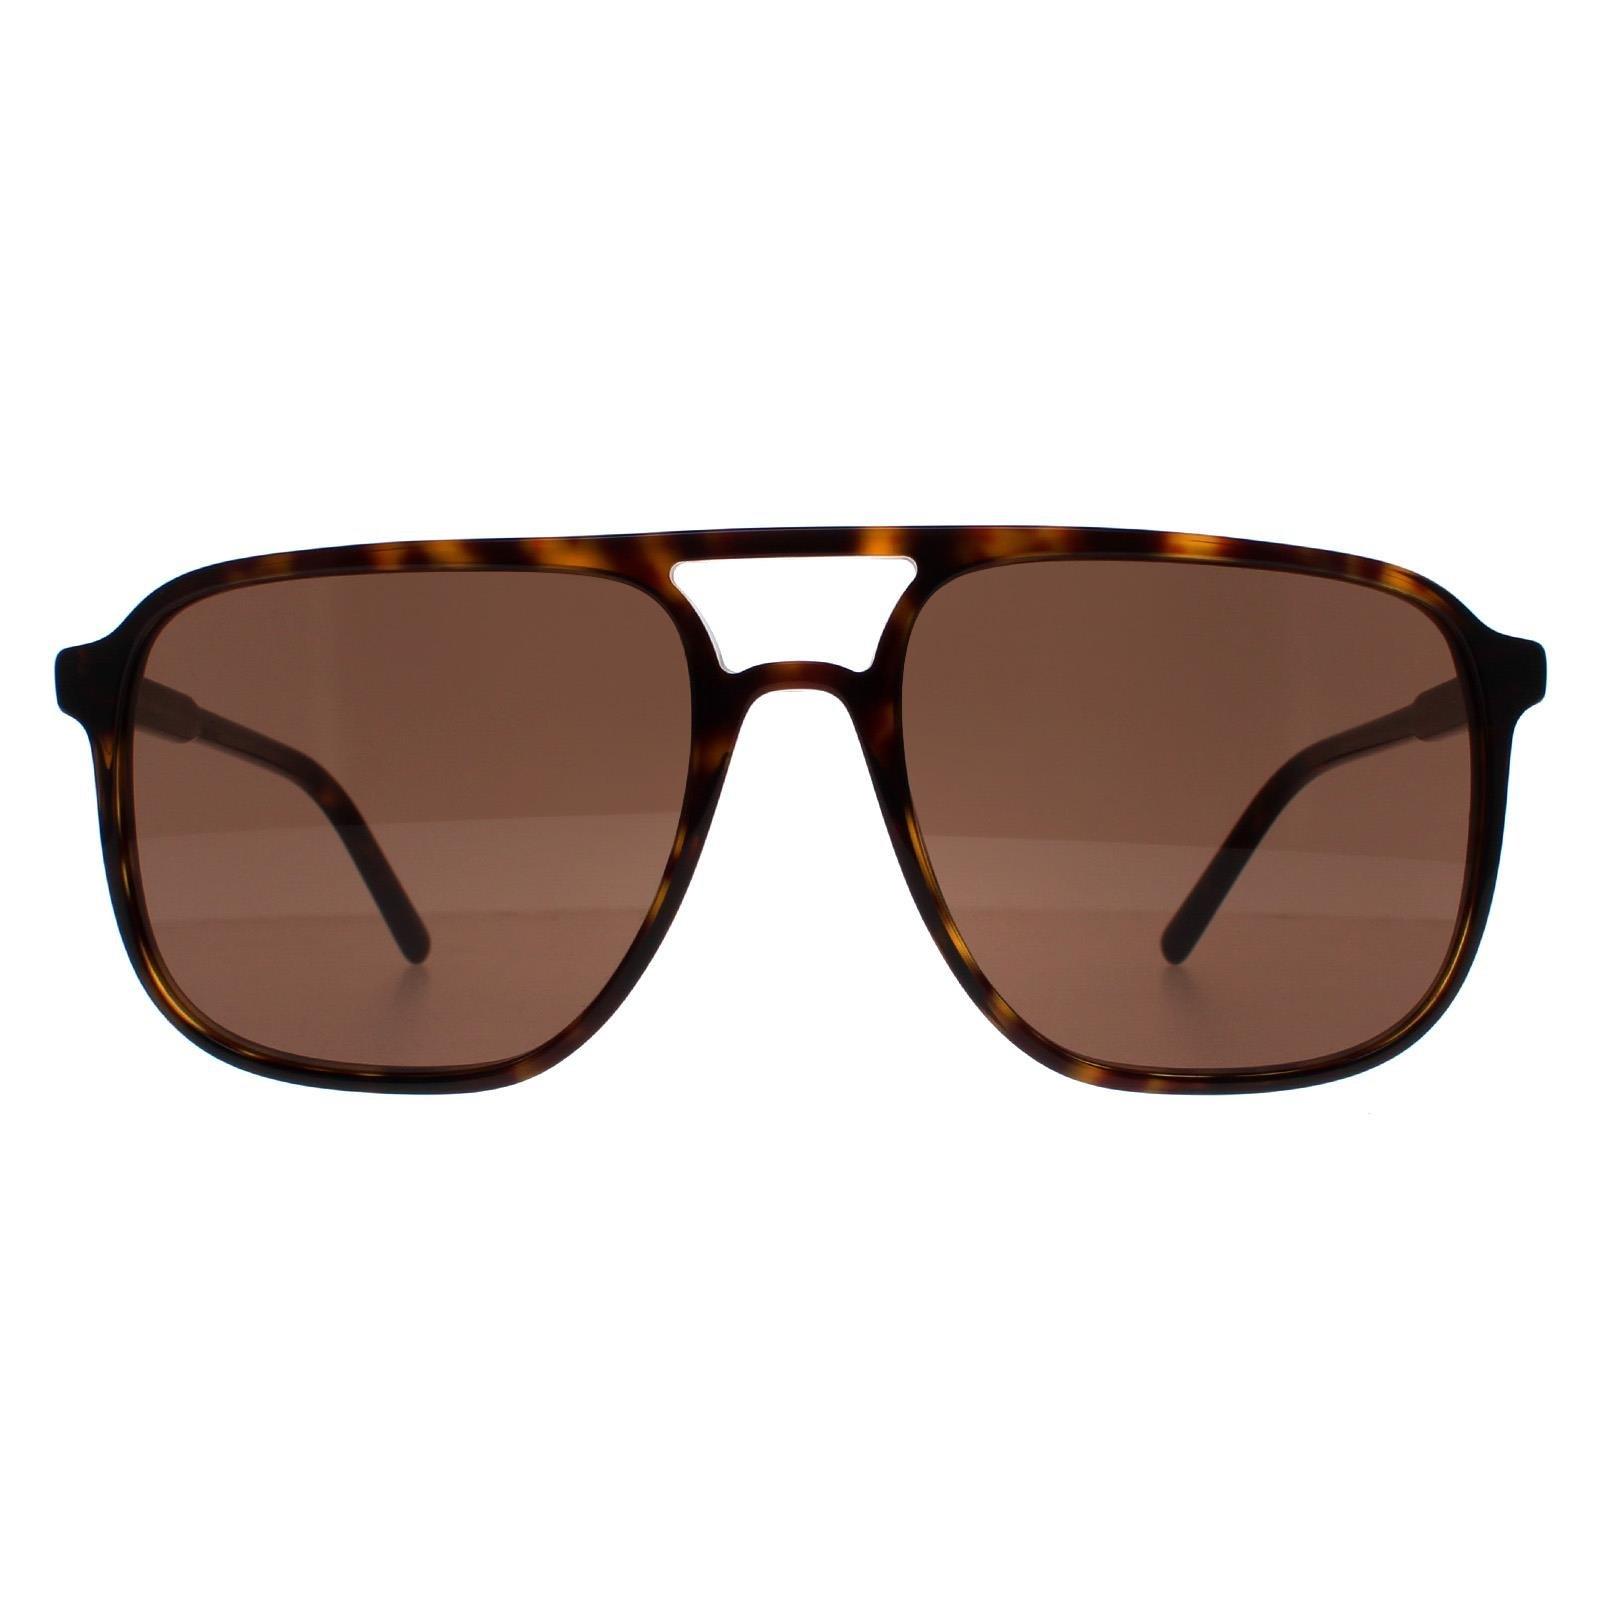 Авиатор Гавана Темно-коричневый DG4423 Dolce & Gabbana, коричневый солнцезащитные очки mark o day corsica dark havana